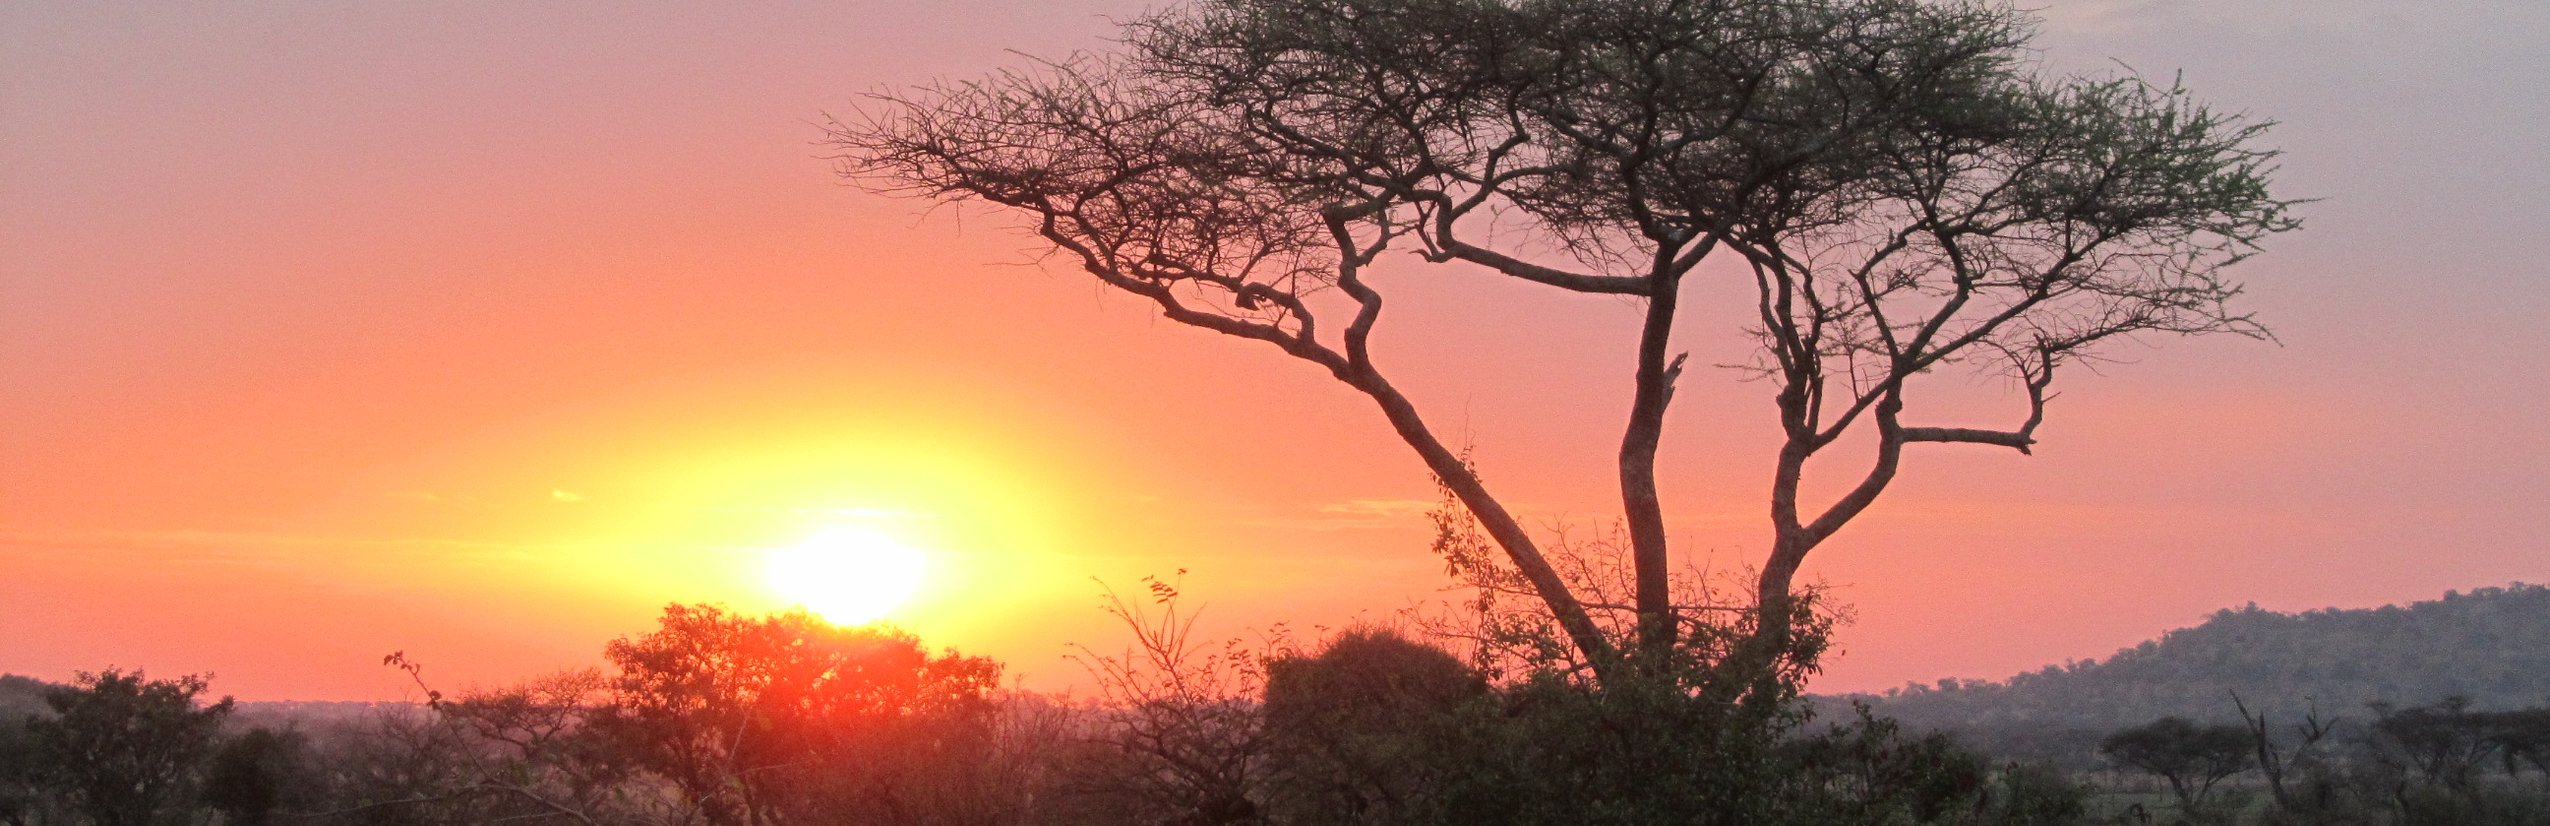 Familienreisen Tansania  - Tansania Teens on Tour - Sonnenuntergang in der Steppe